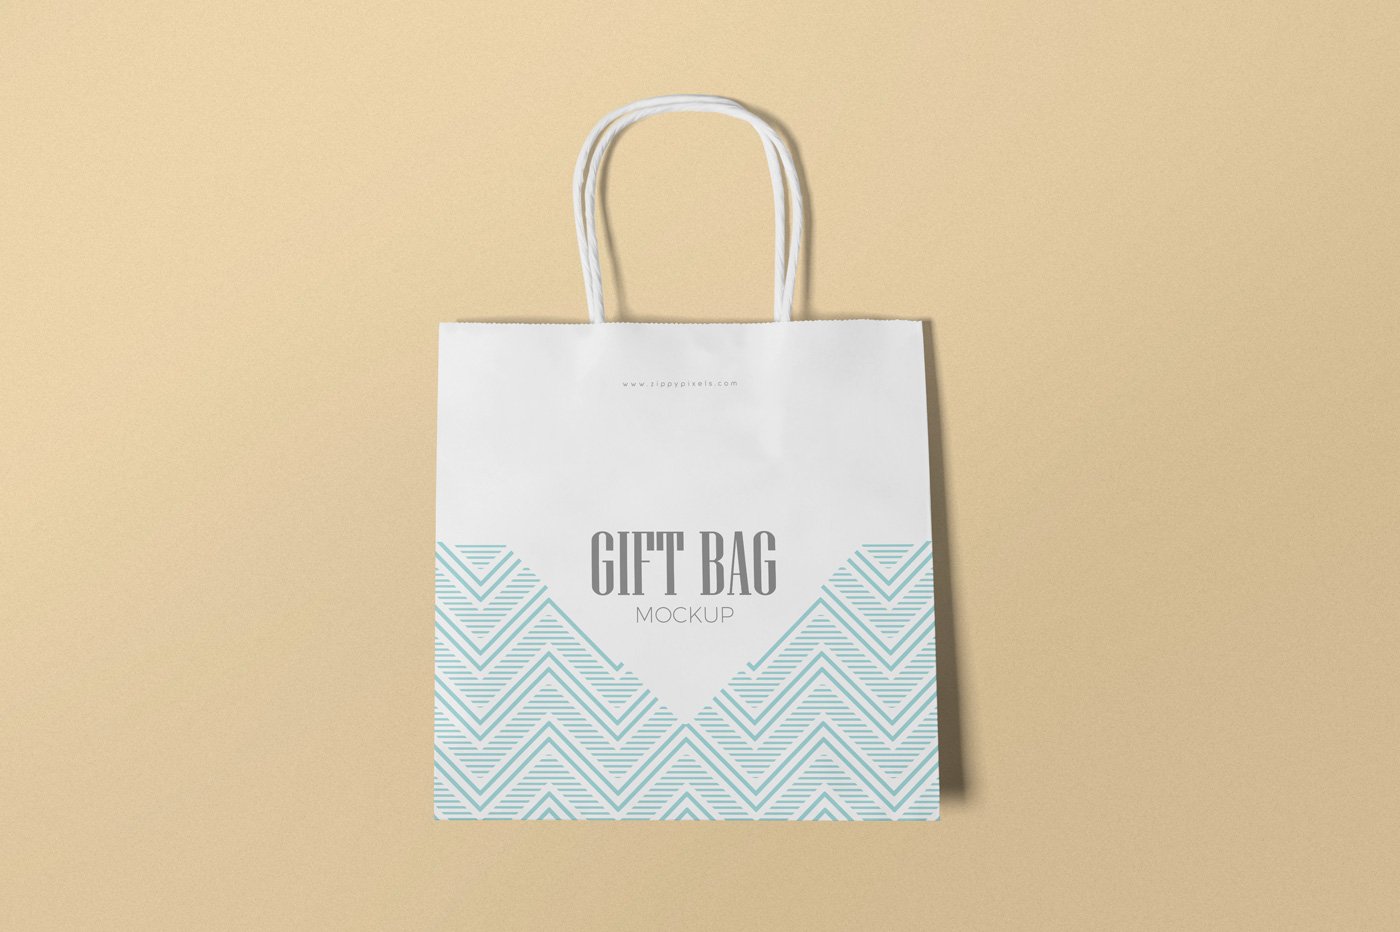 Gift Bag Mockups cover image.